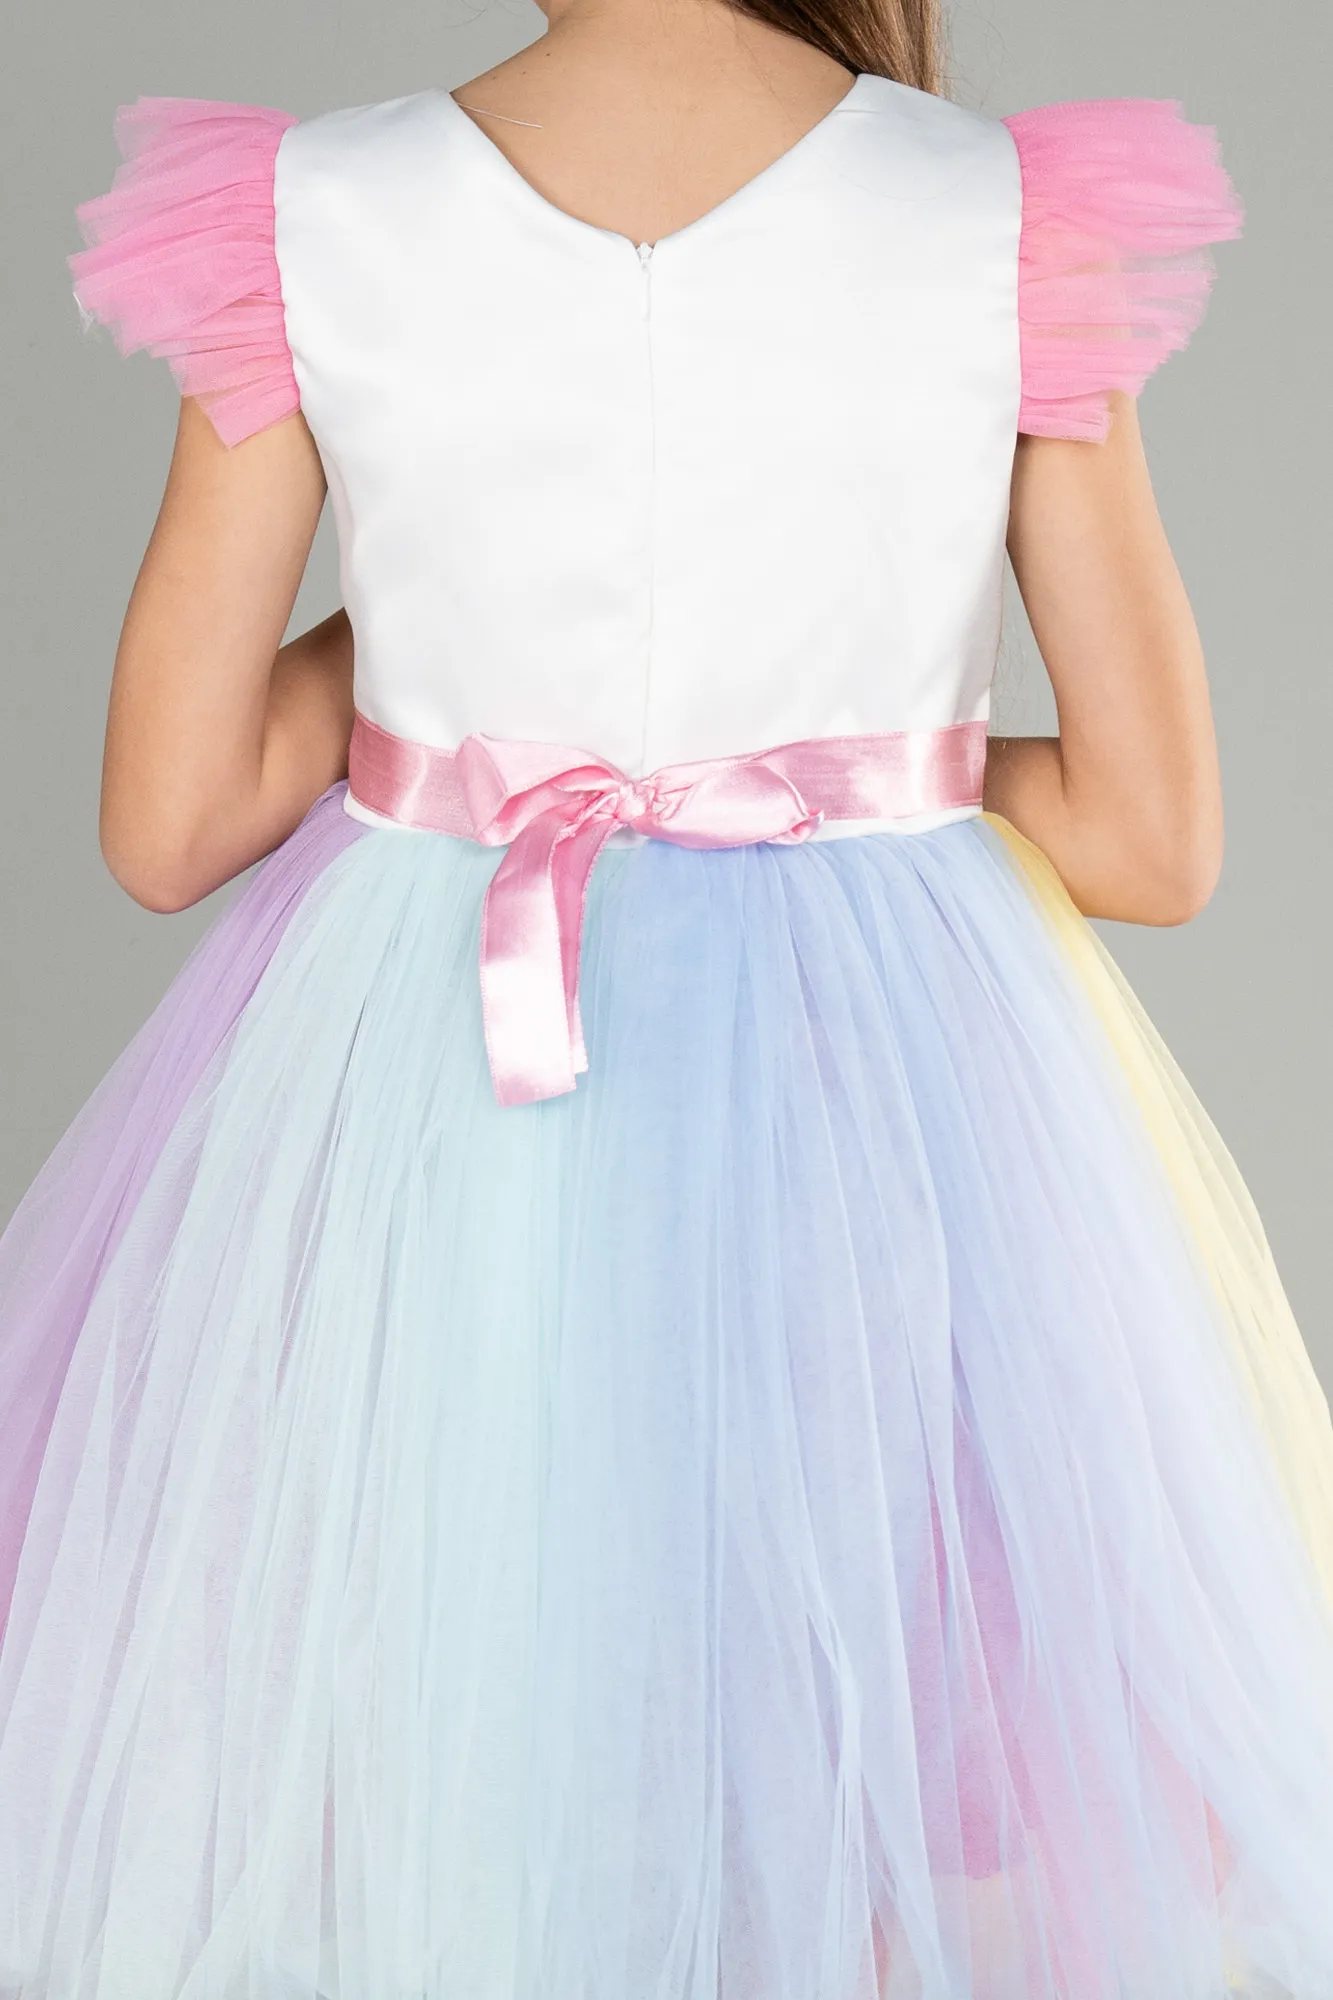 Rinser-Short Girl Dress ABK1761